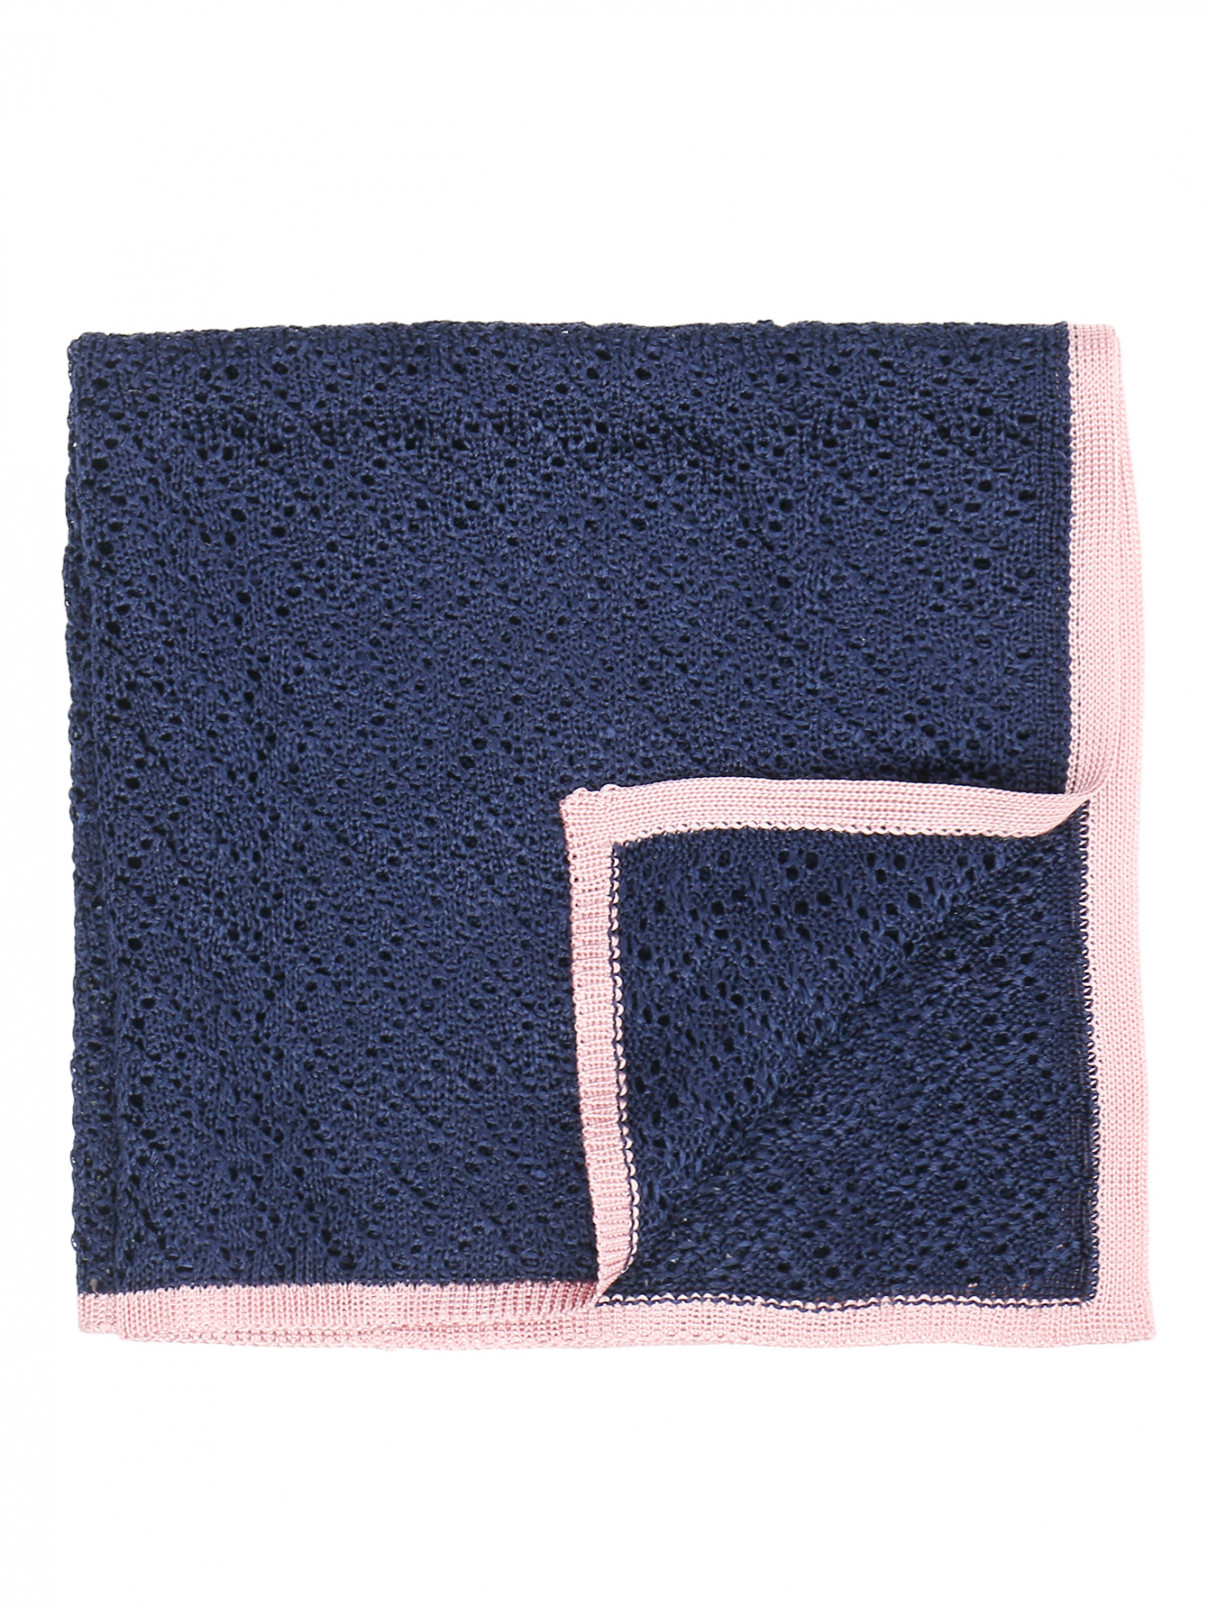 Платок из шелка ажурной вязки LARDINI  –  Общий вид  – Цвет:  Синий